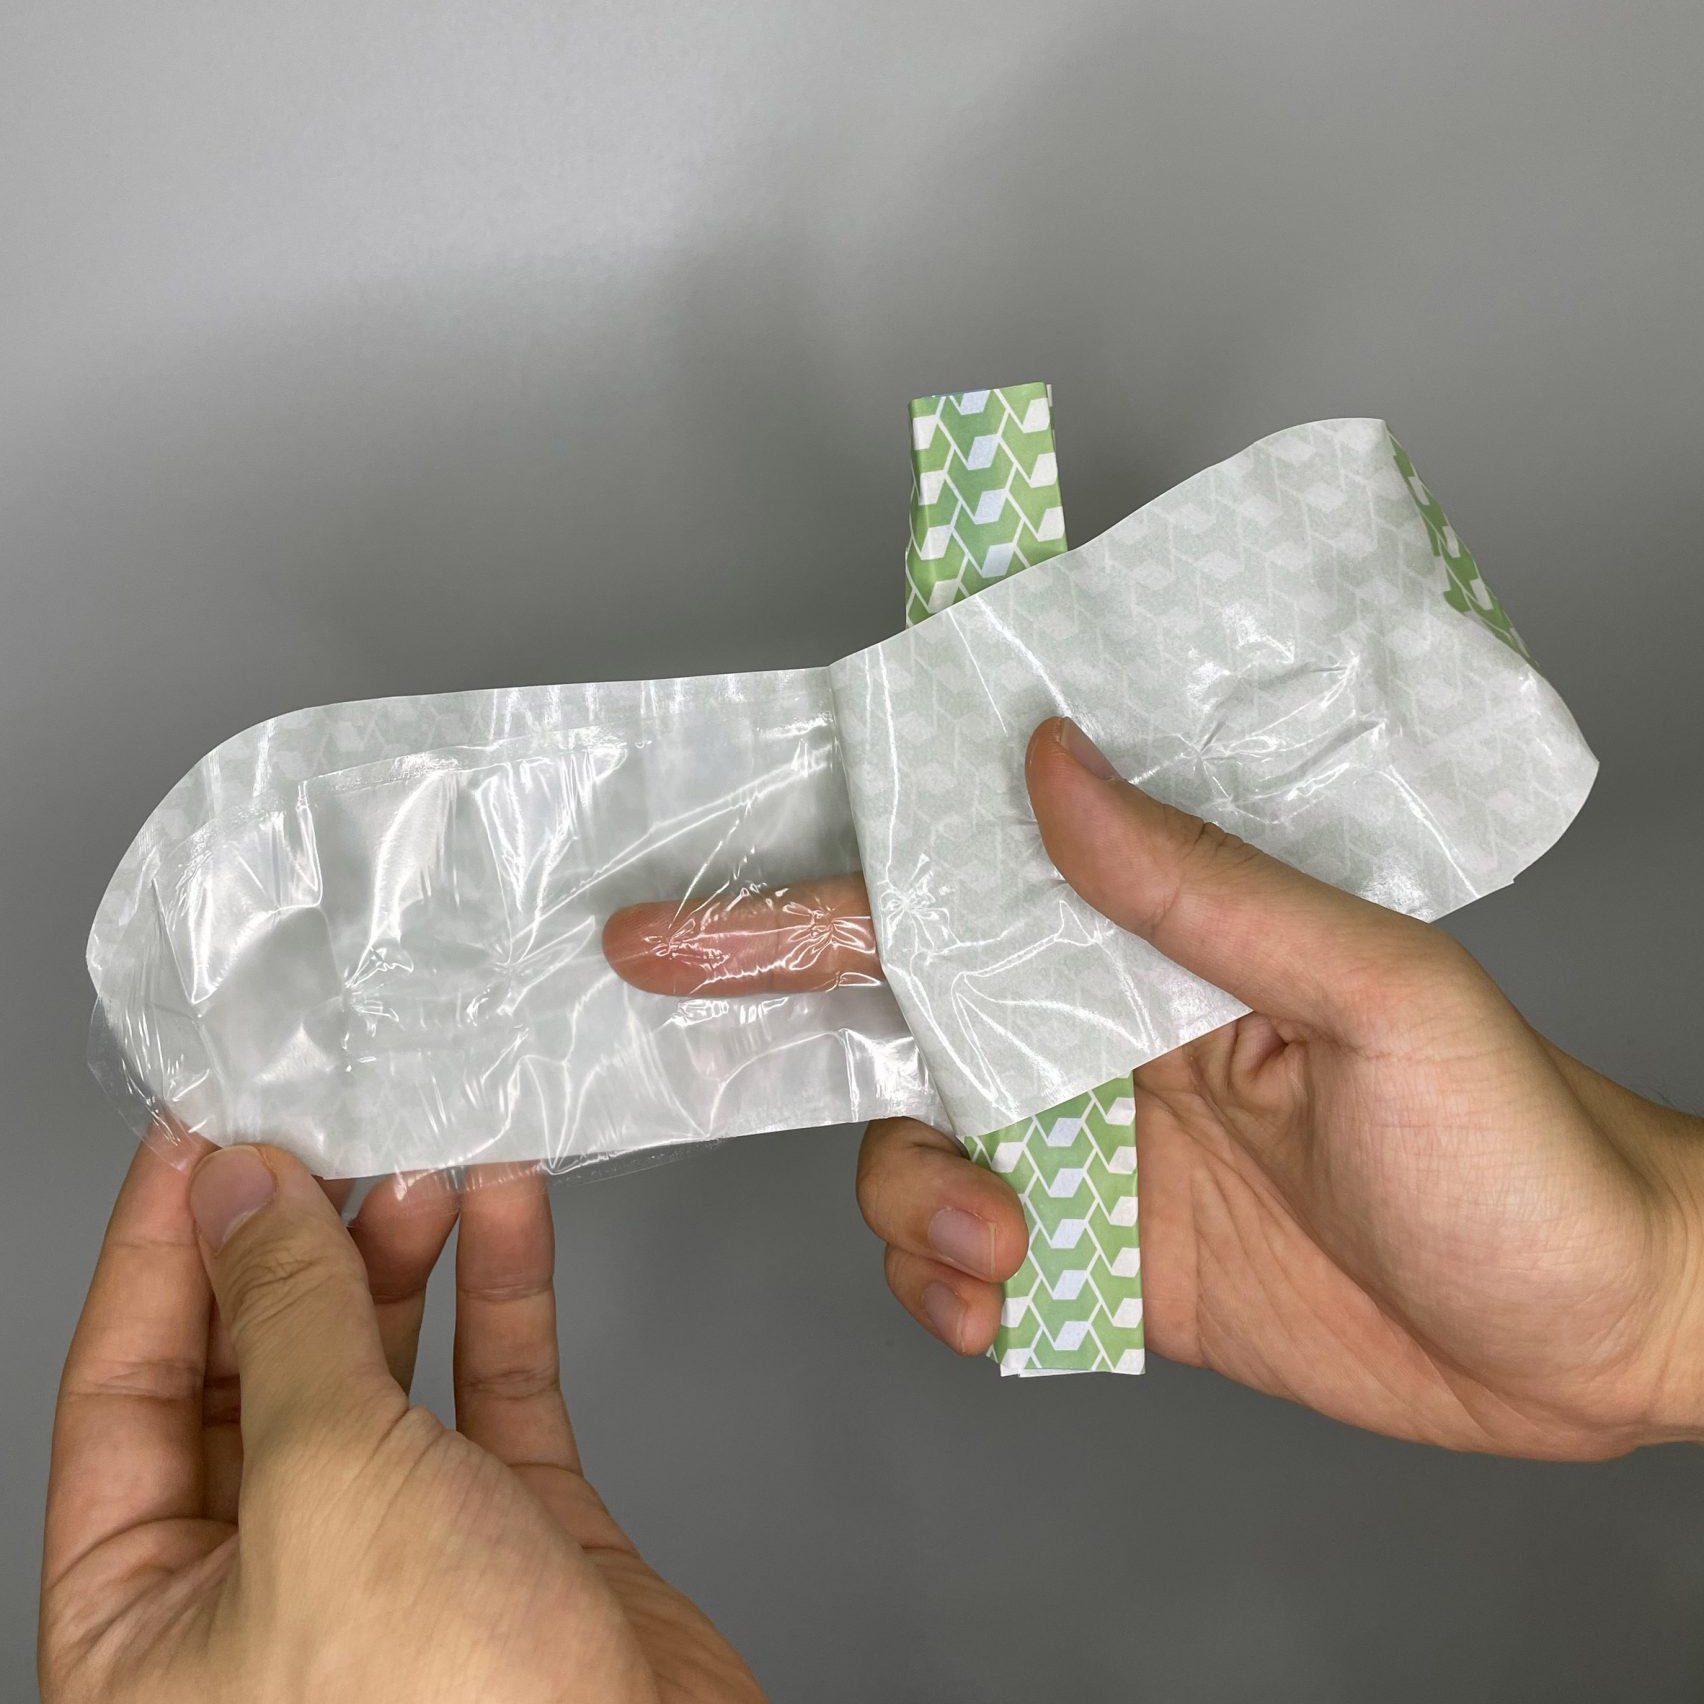 how to make home made condoms